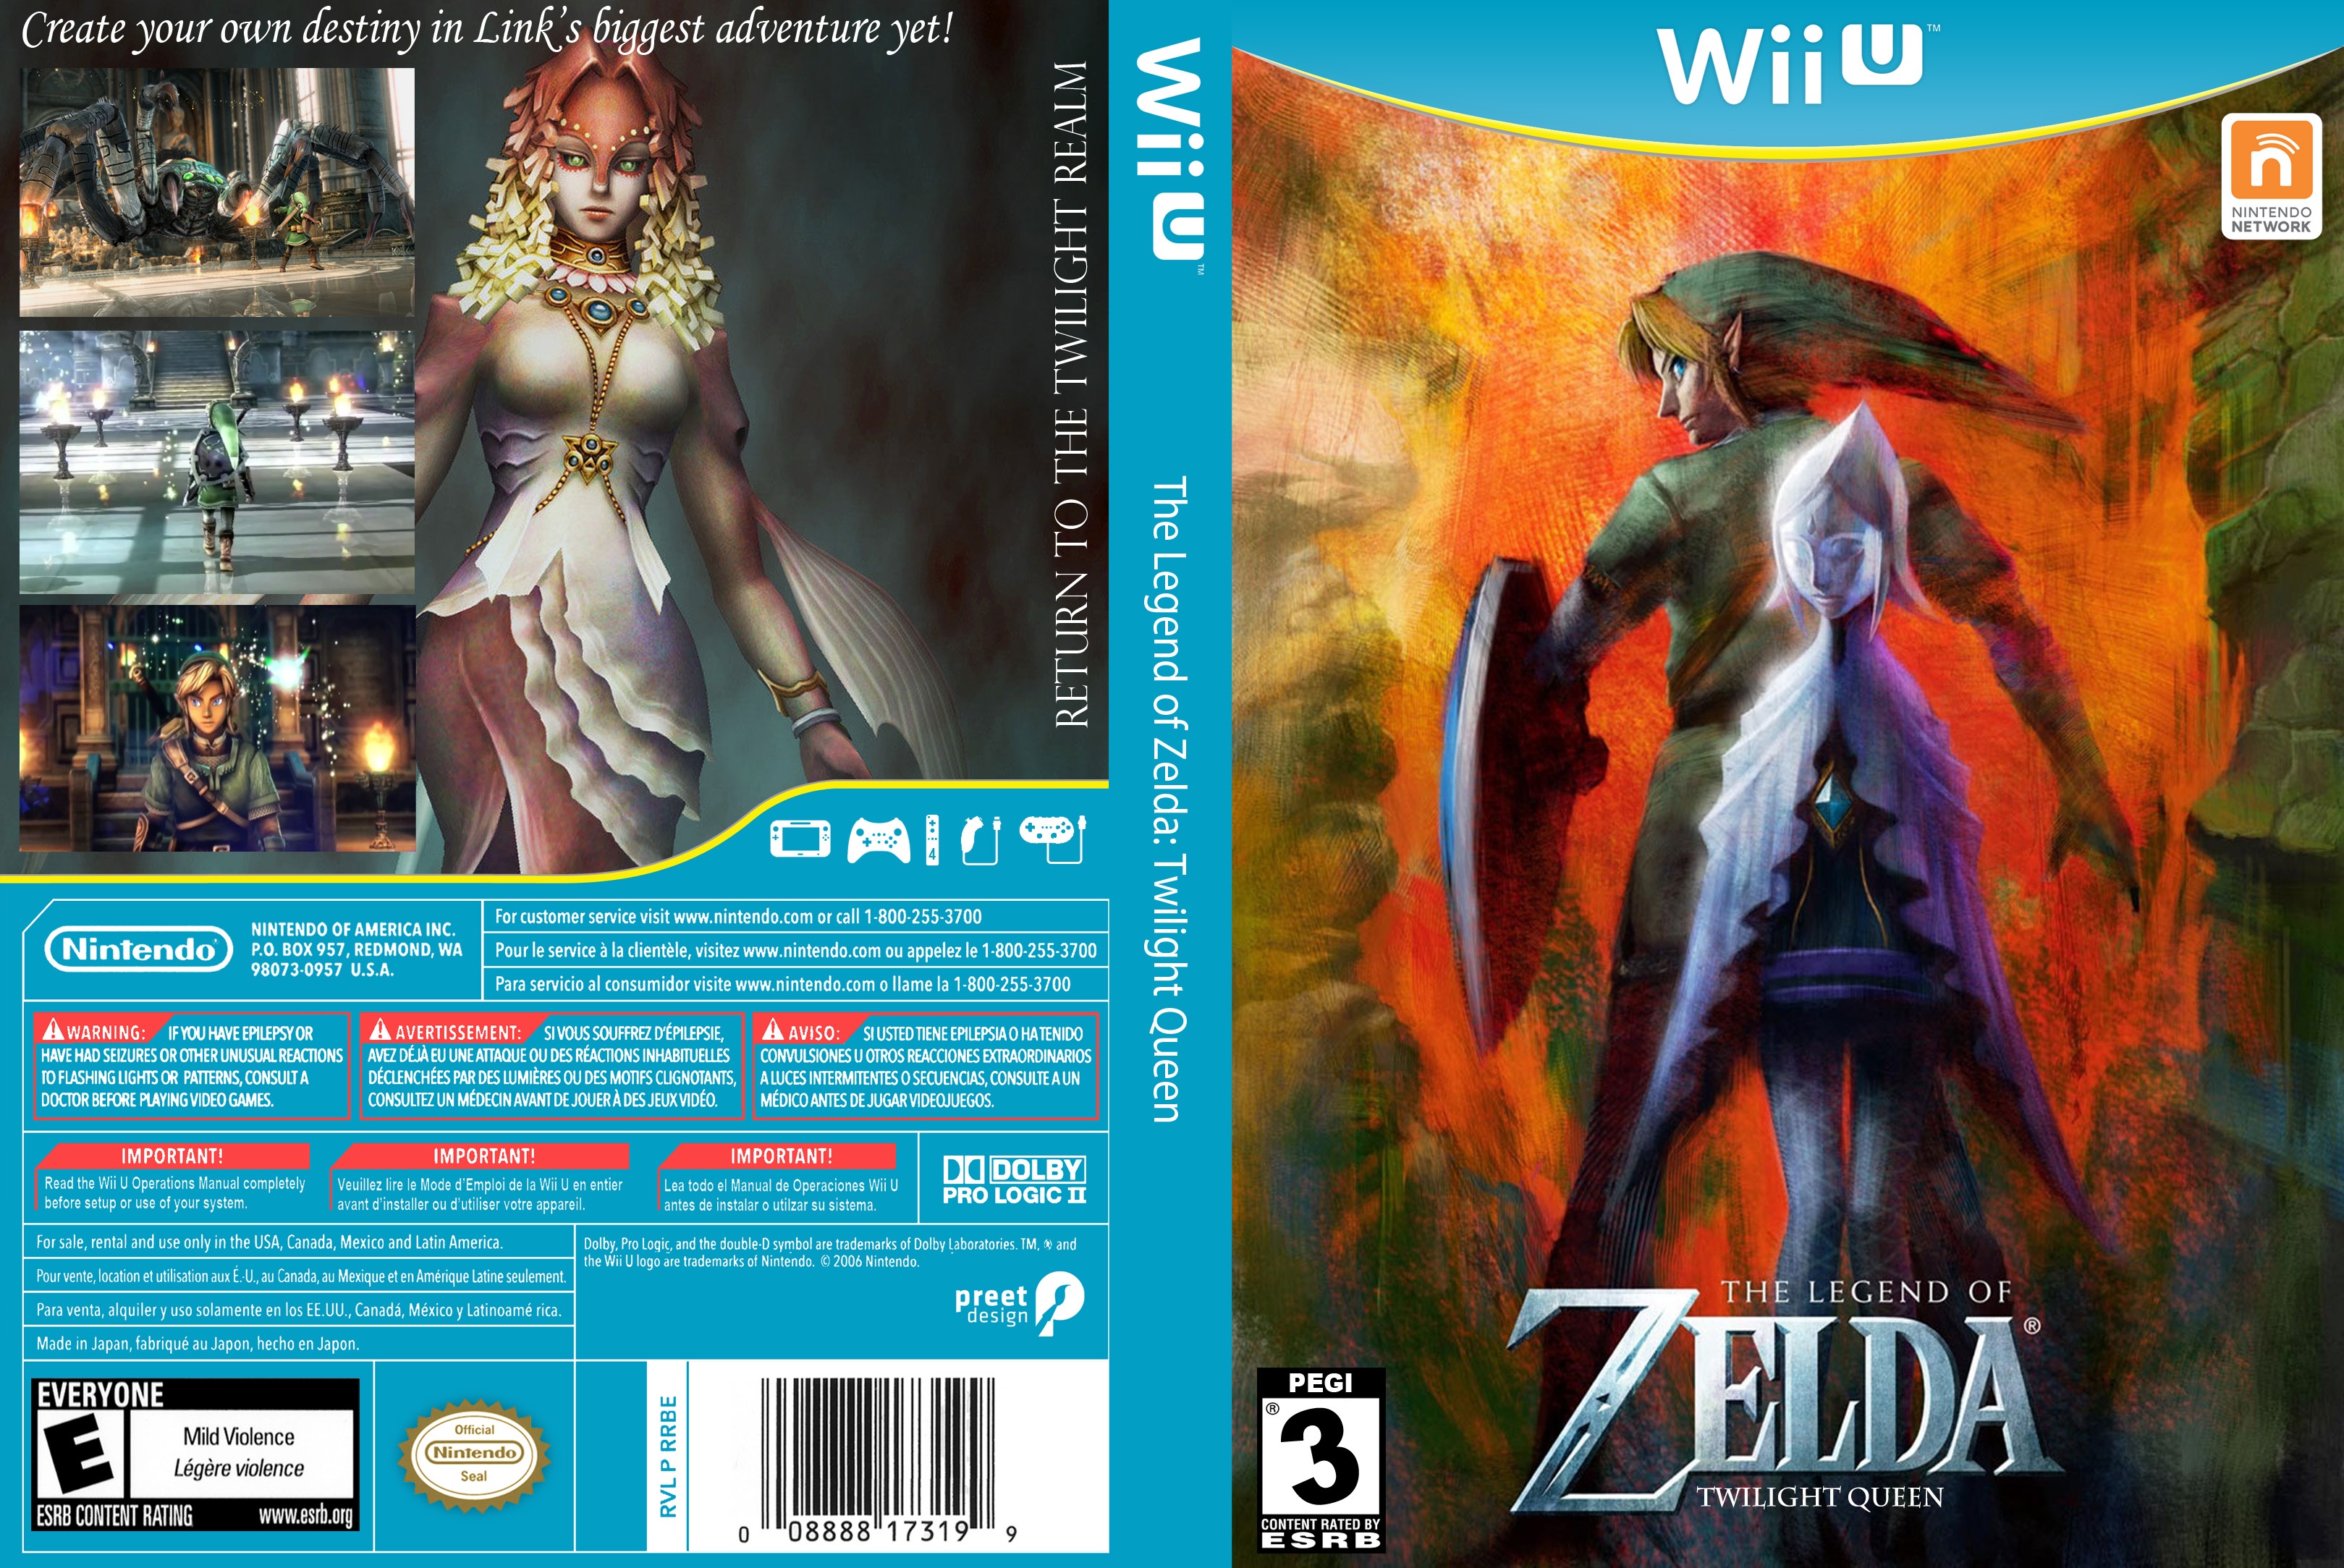 The Legend of Zelda: Twilight Queen box cover